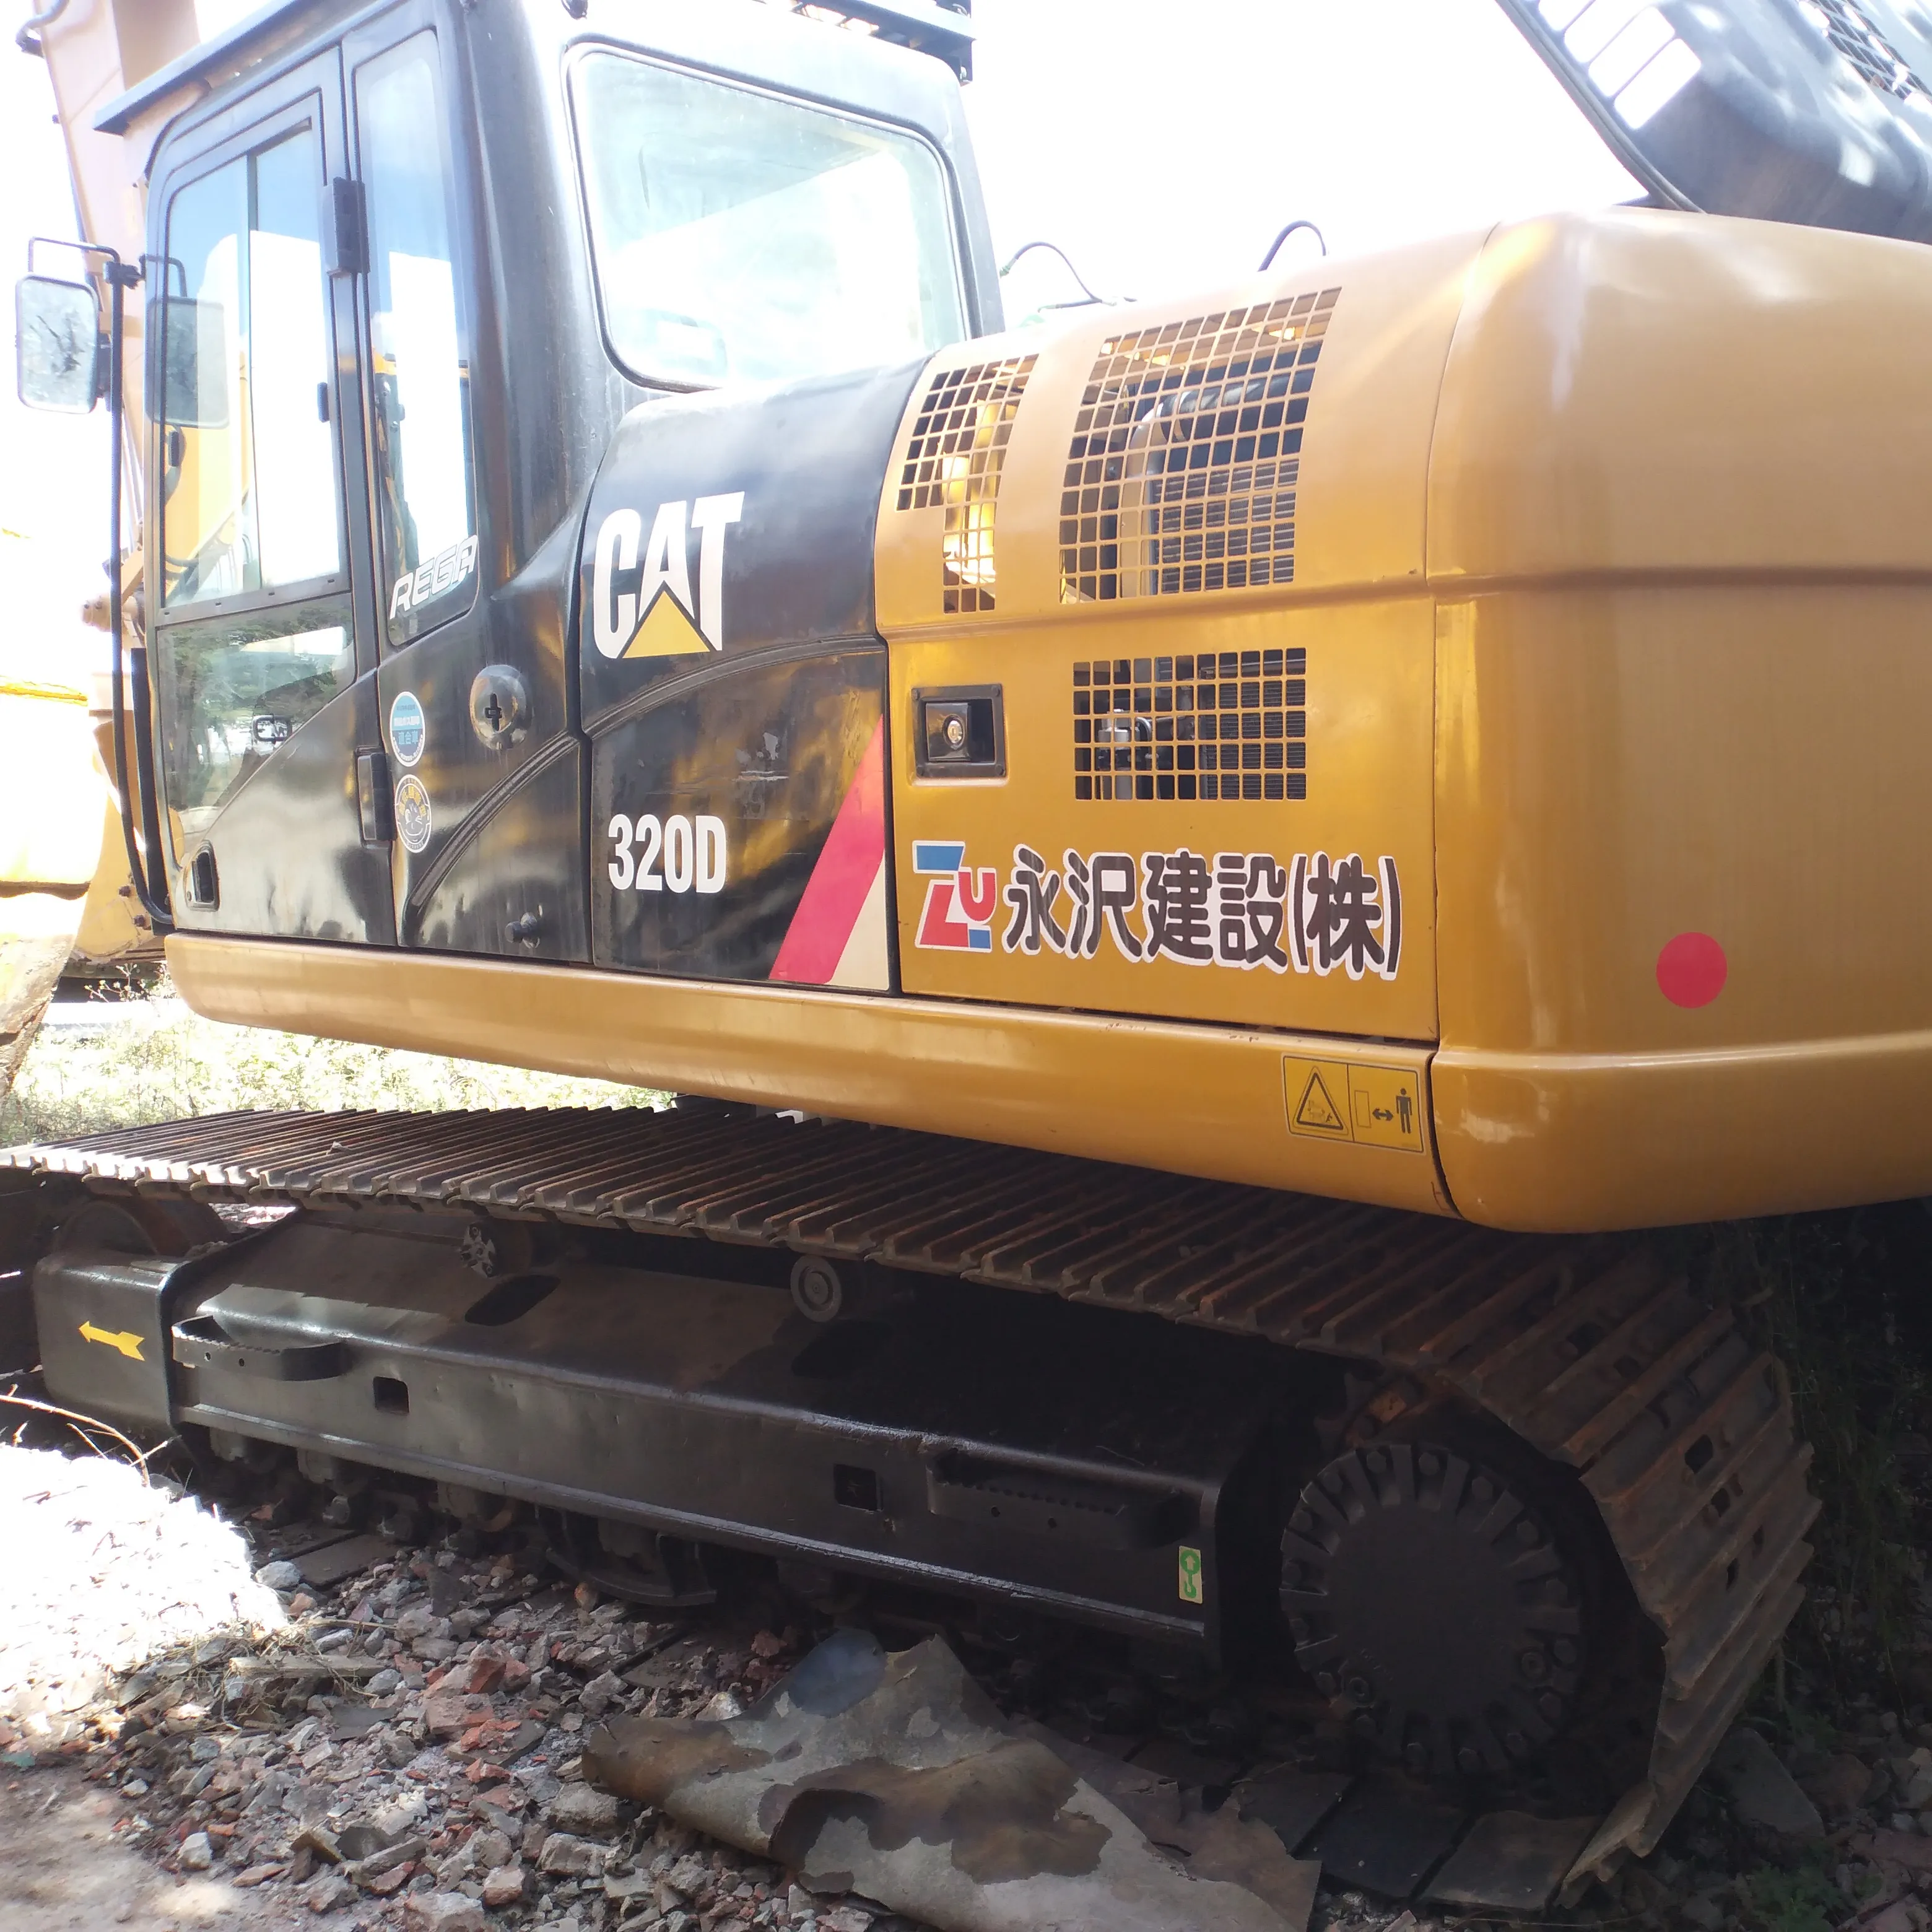 Used CAT 320D crawler excavator 320CL/320D/325C/330B in low price